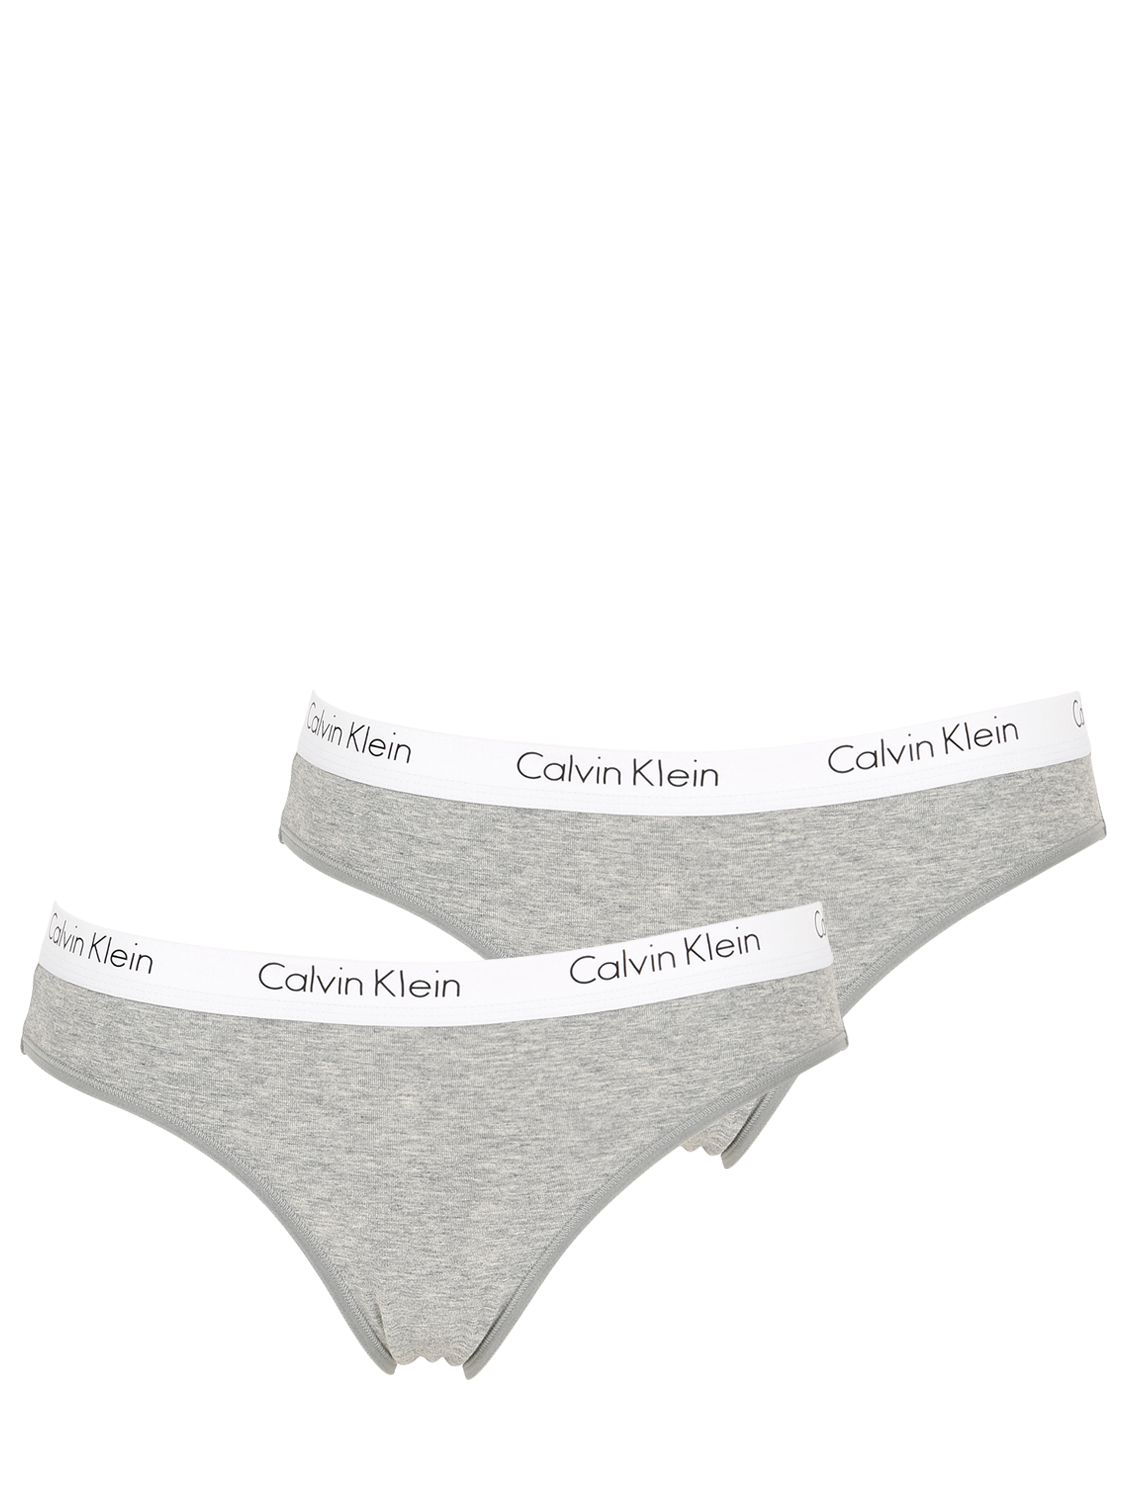 calvin klein underwear soldes